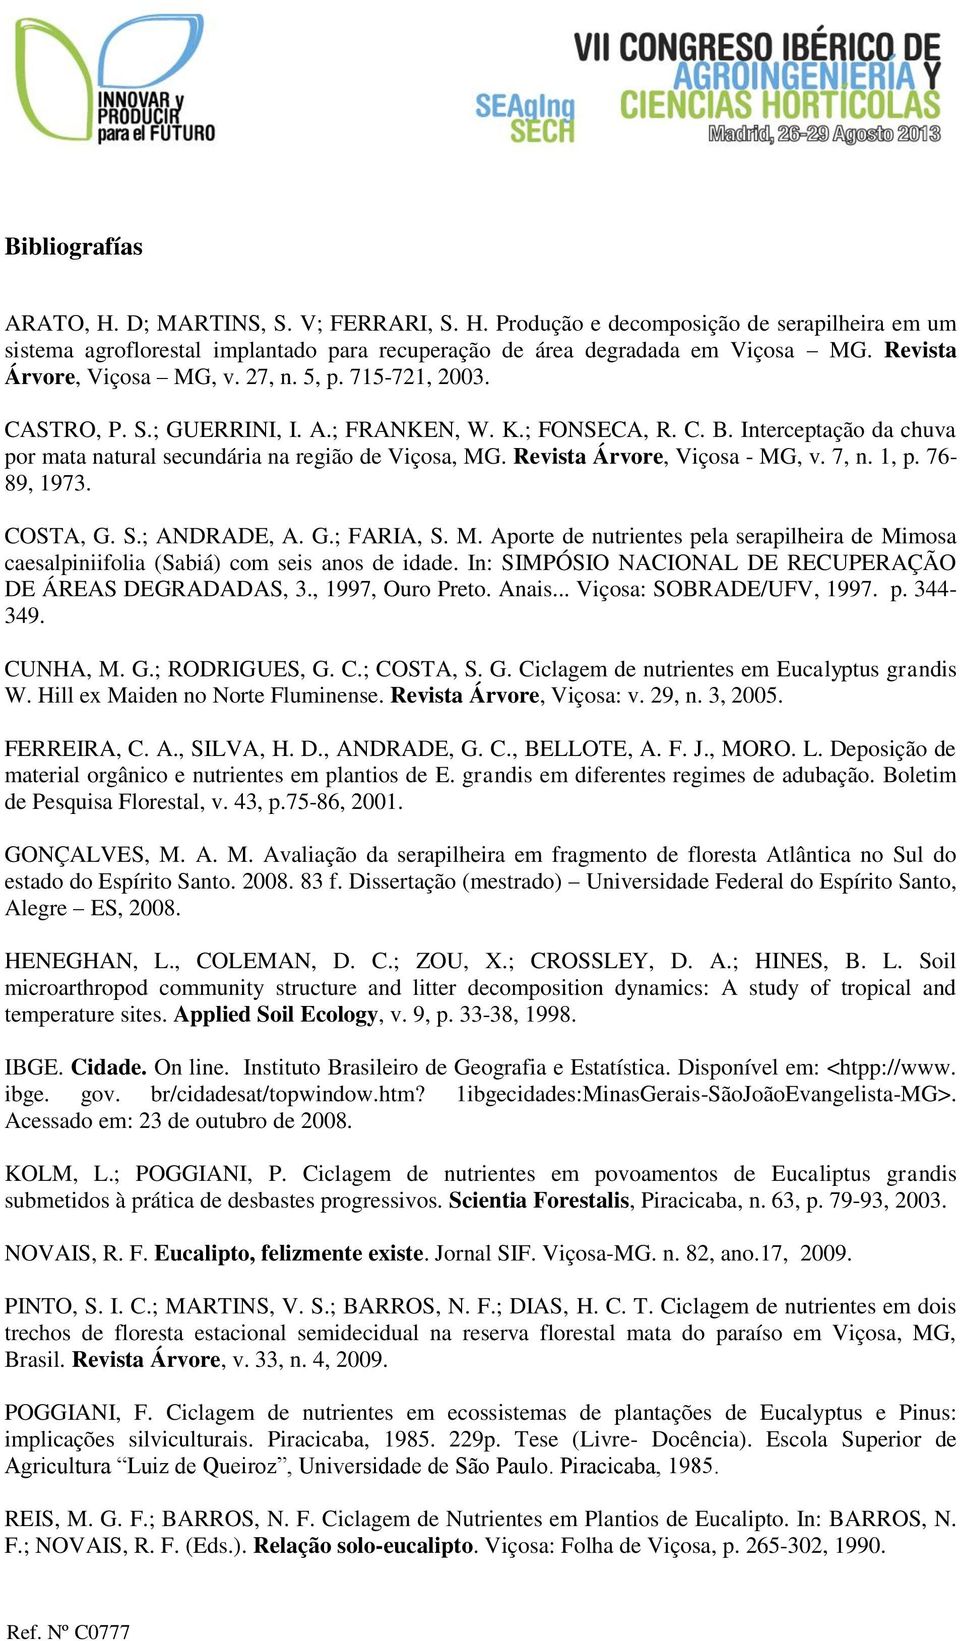 Revista Árvore, Viçosa - MG, v. 7, n. 1, p. 76-89, 1973. COSTA, G. S.; ANDRADE, A. G.; FARIA, S. M. Aporte de nutrientes pela serapilheira de Mimosa caesalpiniifolia (Sabiá) com seis anos de idade.